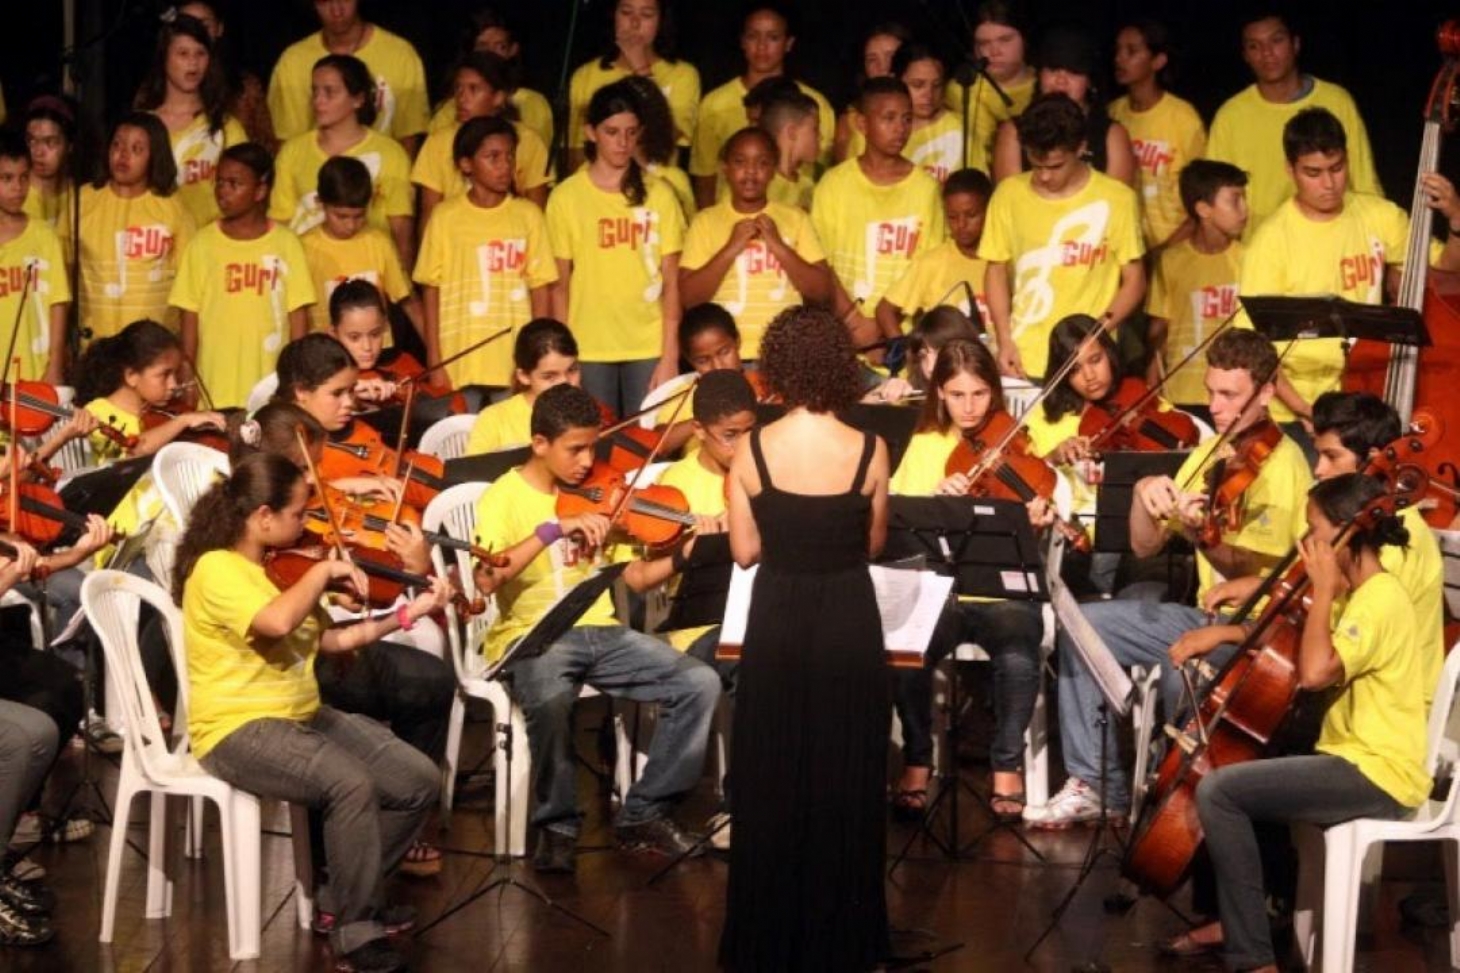 Prorrogadas inscrições para cursos de música do Projeto Guri em Santos | Jornal da Orla